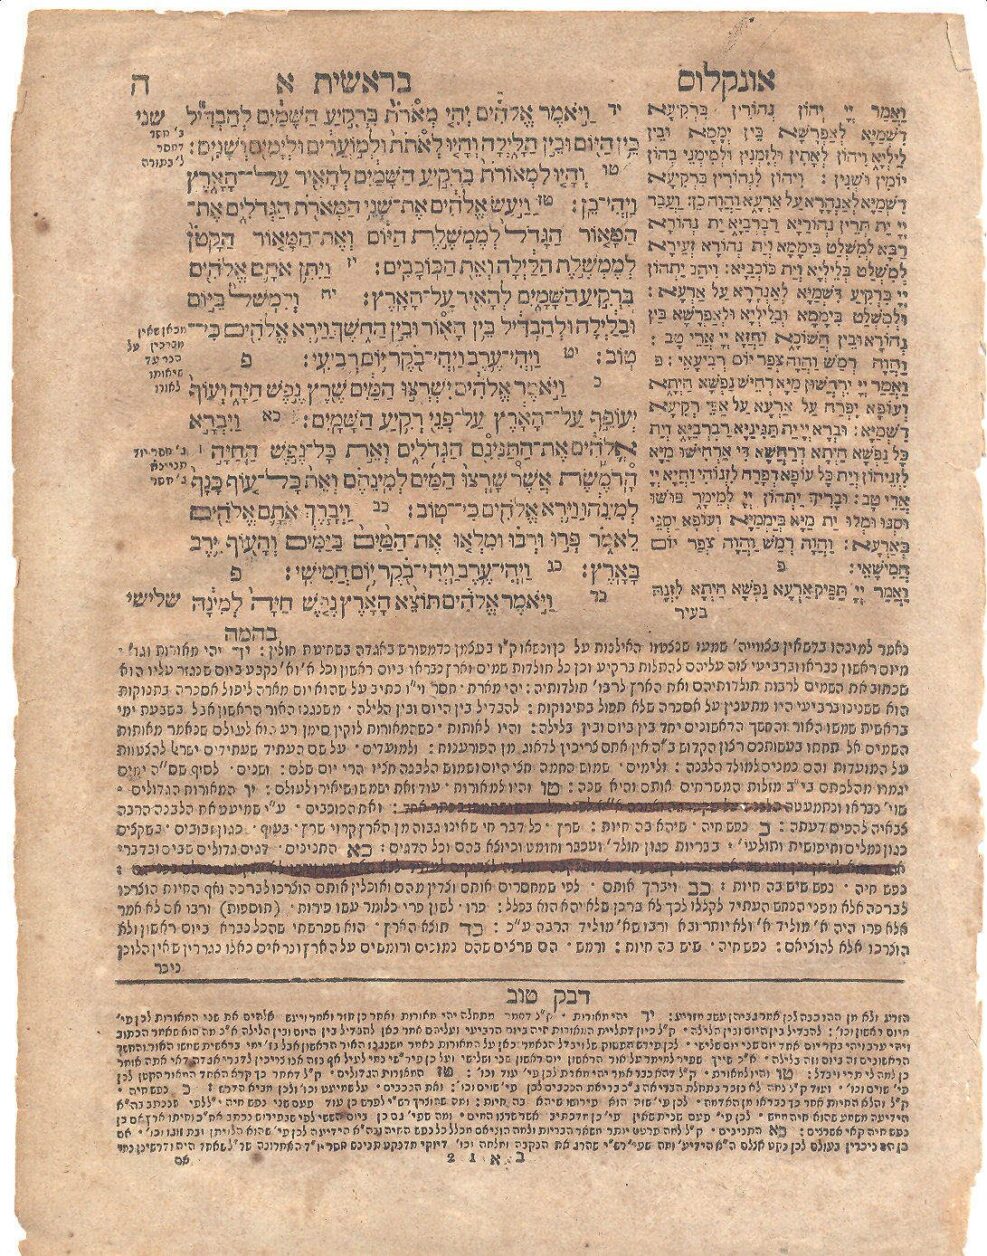 Книга Пятикнижия с комментариями Раши, которая была напечатана в Амстердаме в 1749 году. Можно увидеть черные чернила, скрывающие часть комментария, запрещенного христианской цензурной